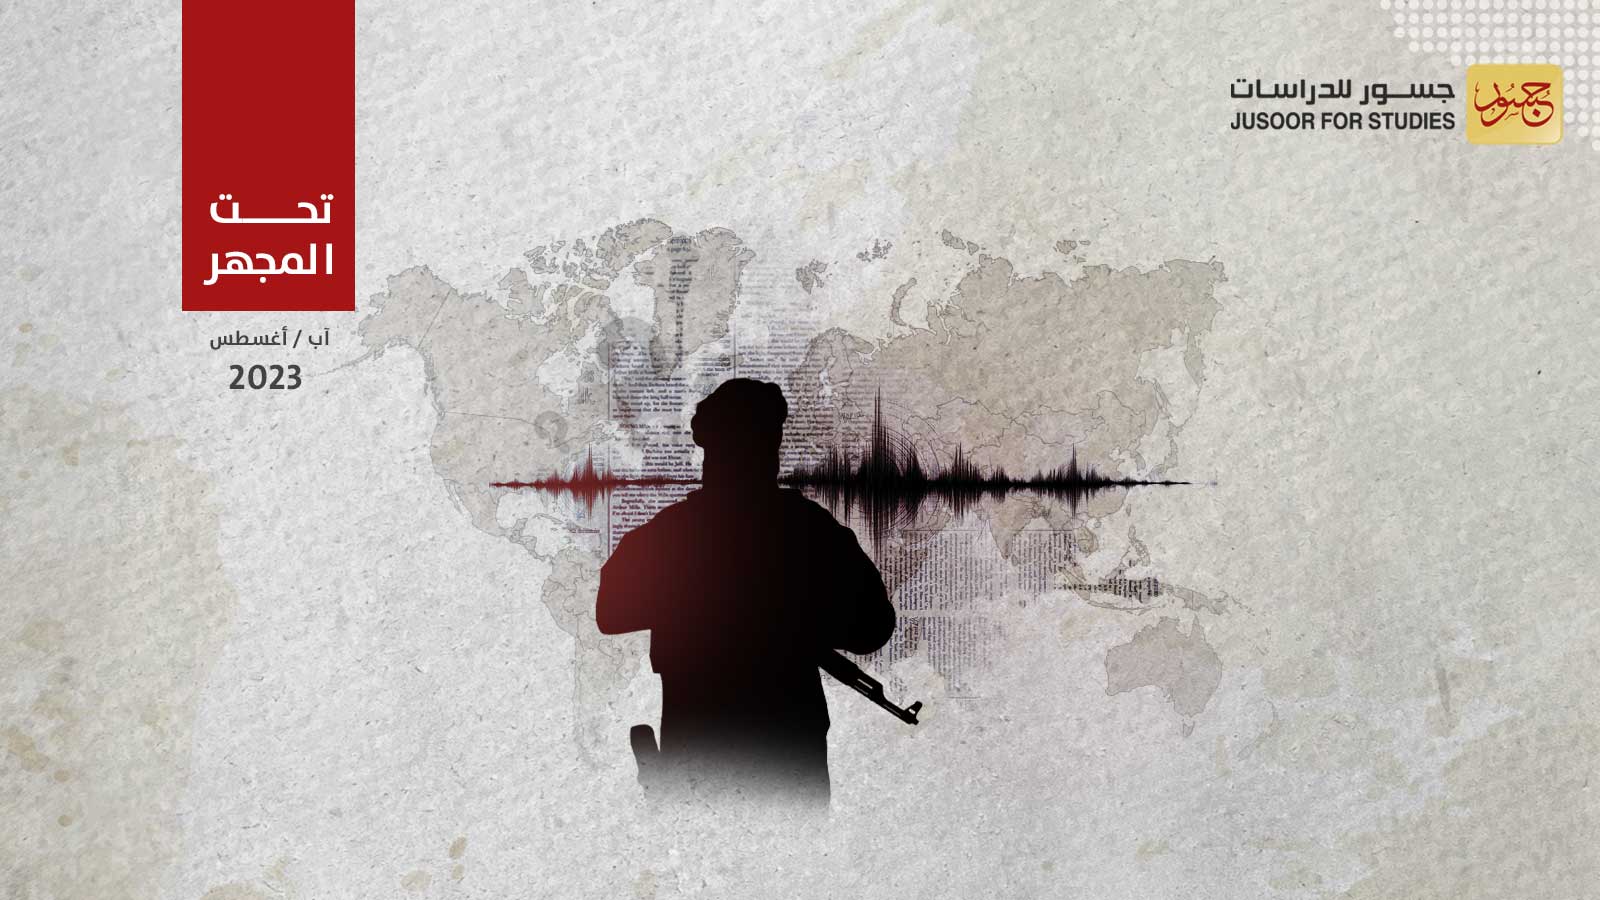 تنظيم داعش يوجّه رسائل متعددة تشمل تركيا وهيئة تحرير الشام